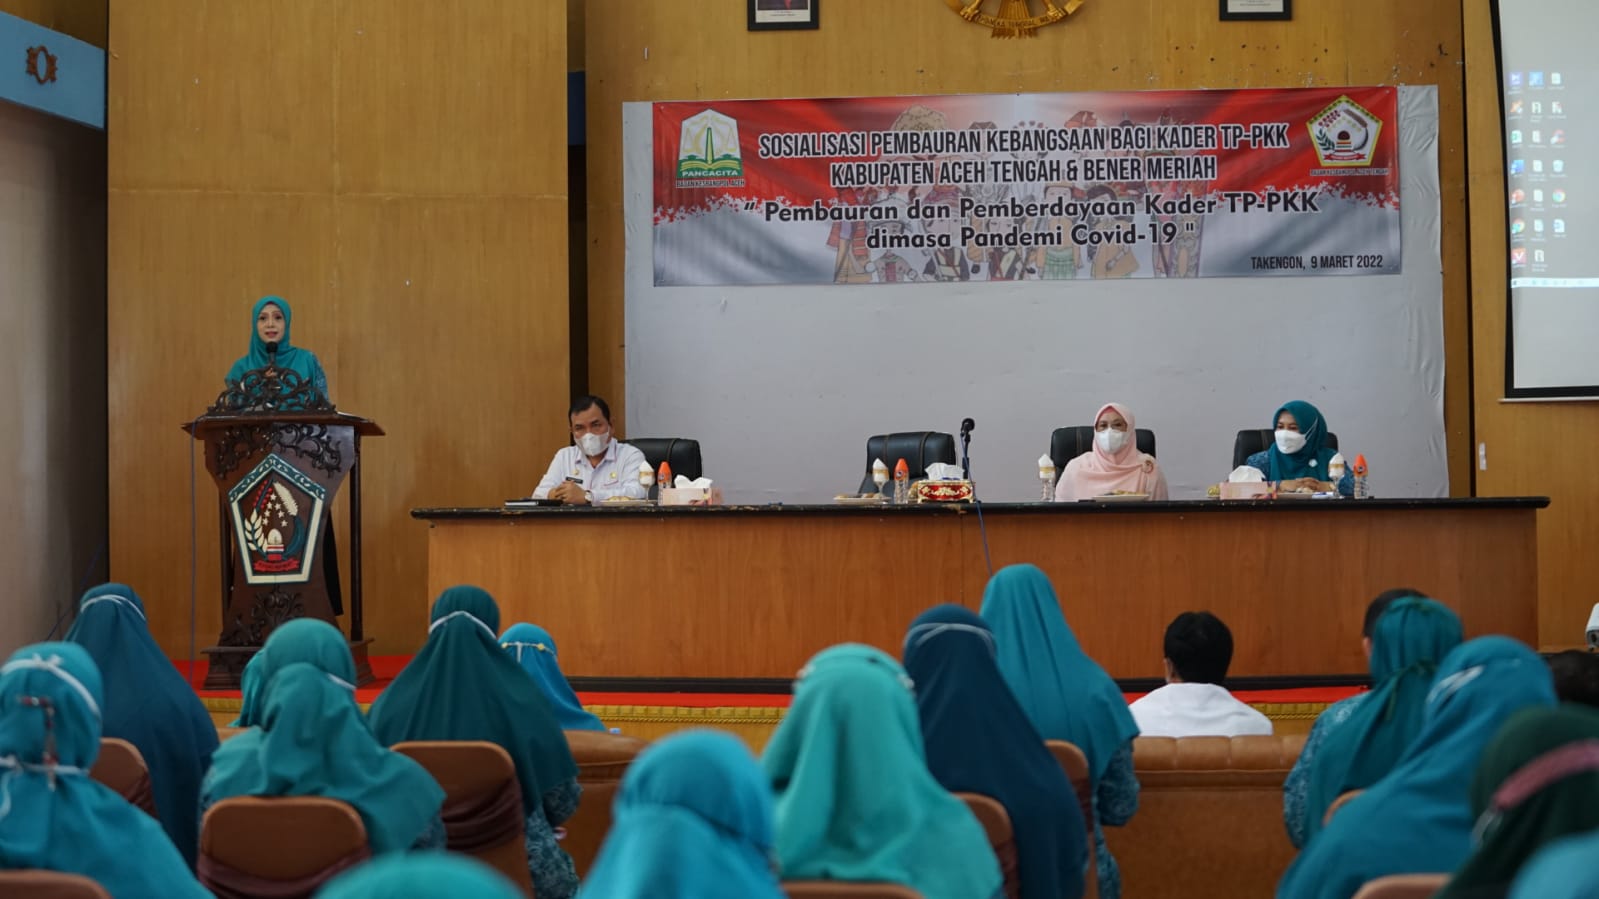 Ketua TP-PKK Aceh, Dr. Ir. Dyah Erti Idawati, MT, memberikan sambutan dan arahan saat membuka kegiatan Sosialisasi Pembauran Kebangsaan bagi Kader TP-PKK Kabupaten Aceh Tengah dan Bener Meriah, di Aula Kantor Setdakab Aceh Tengah, Rabu (9/3/2022).